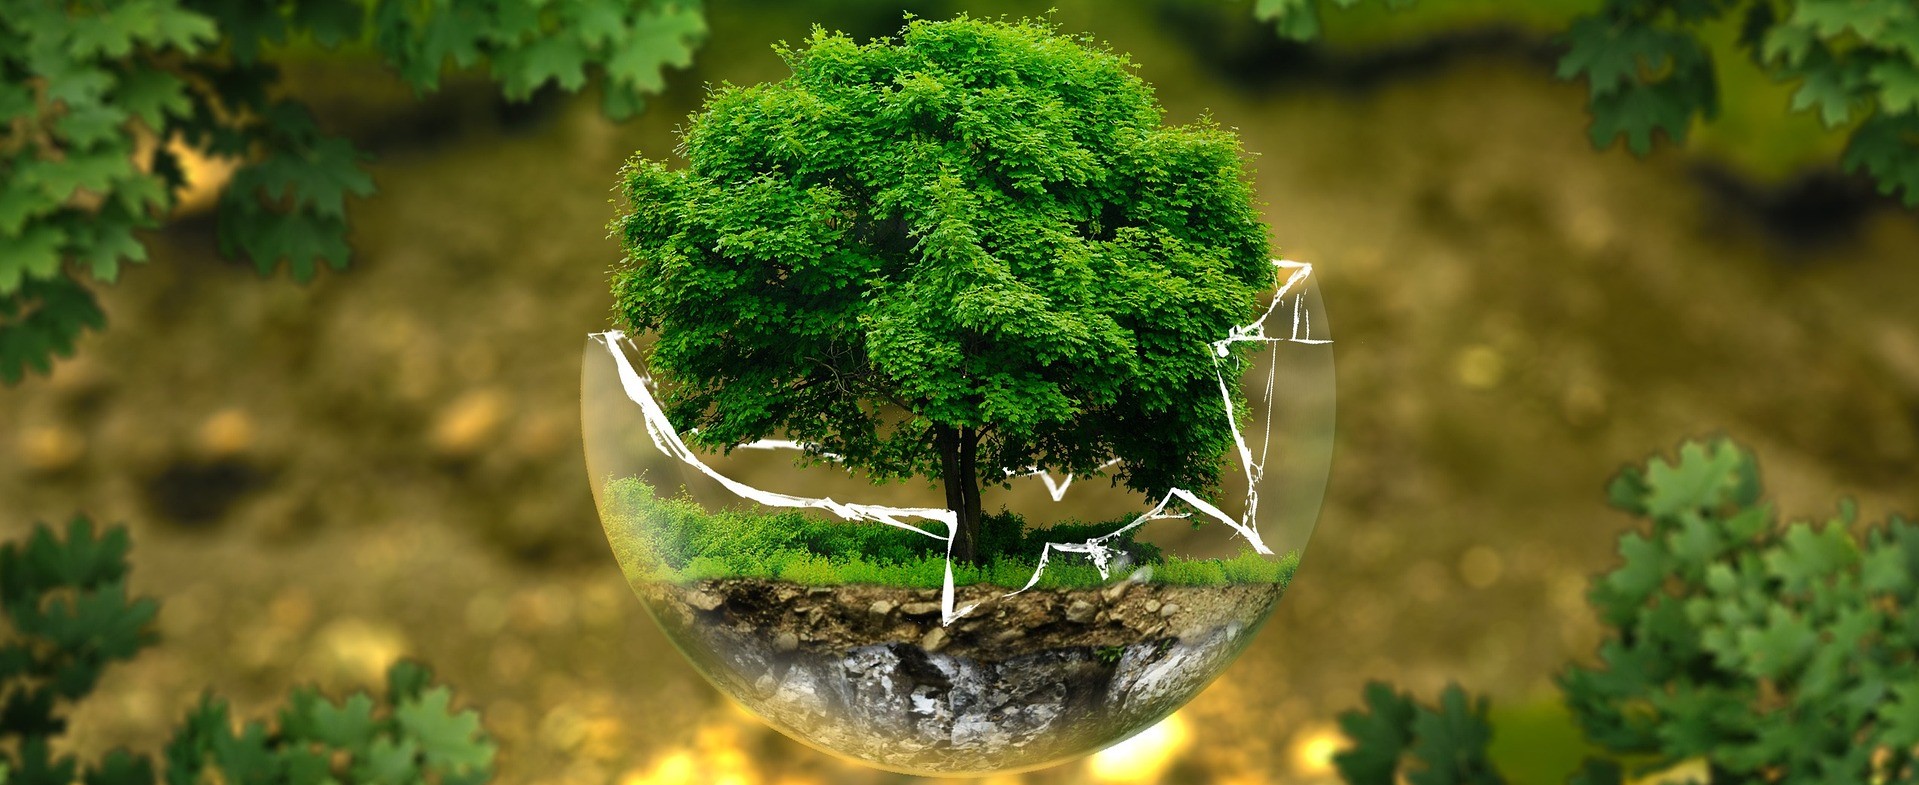 Környezetvédelmi termékdíj törvény változásai – szakmai fórum